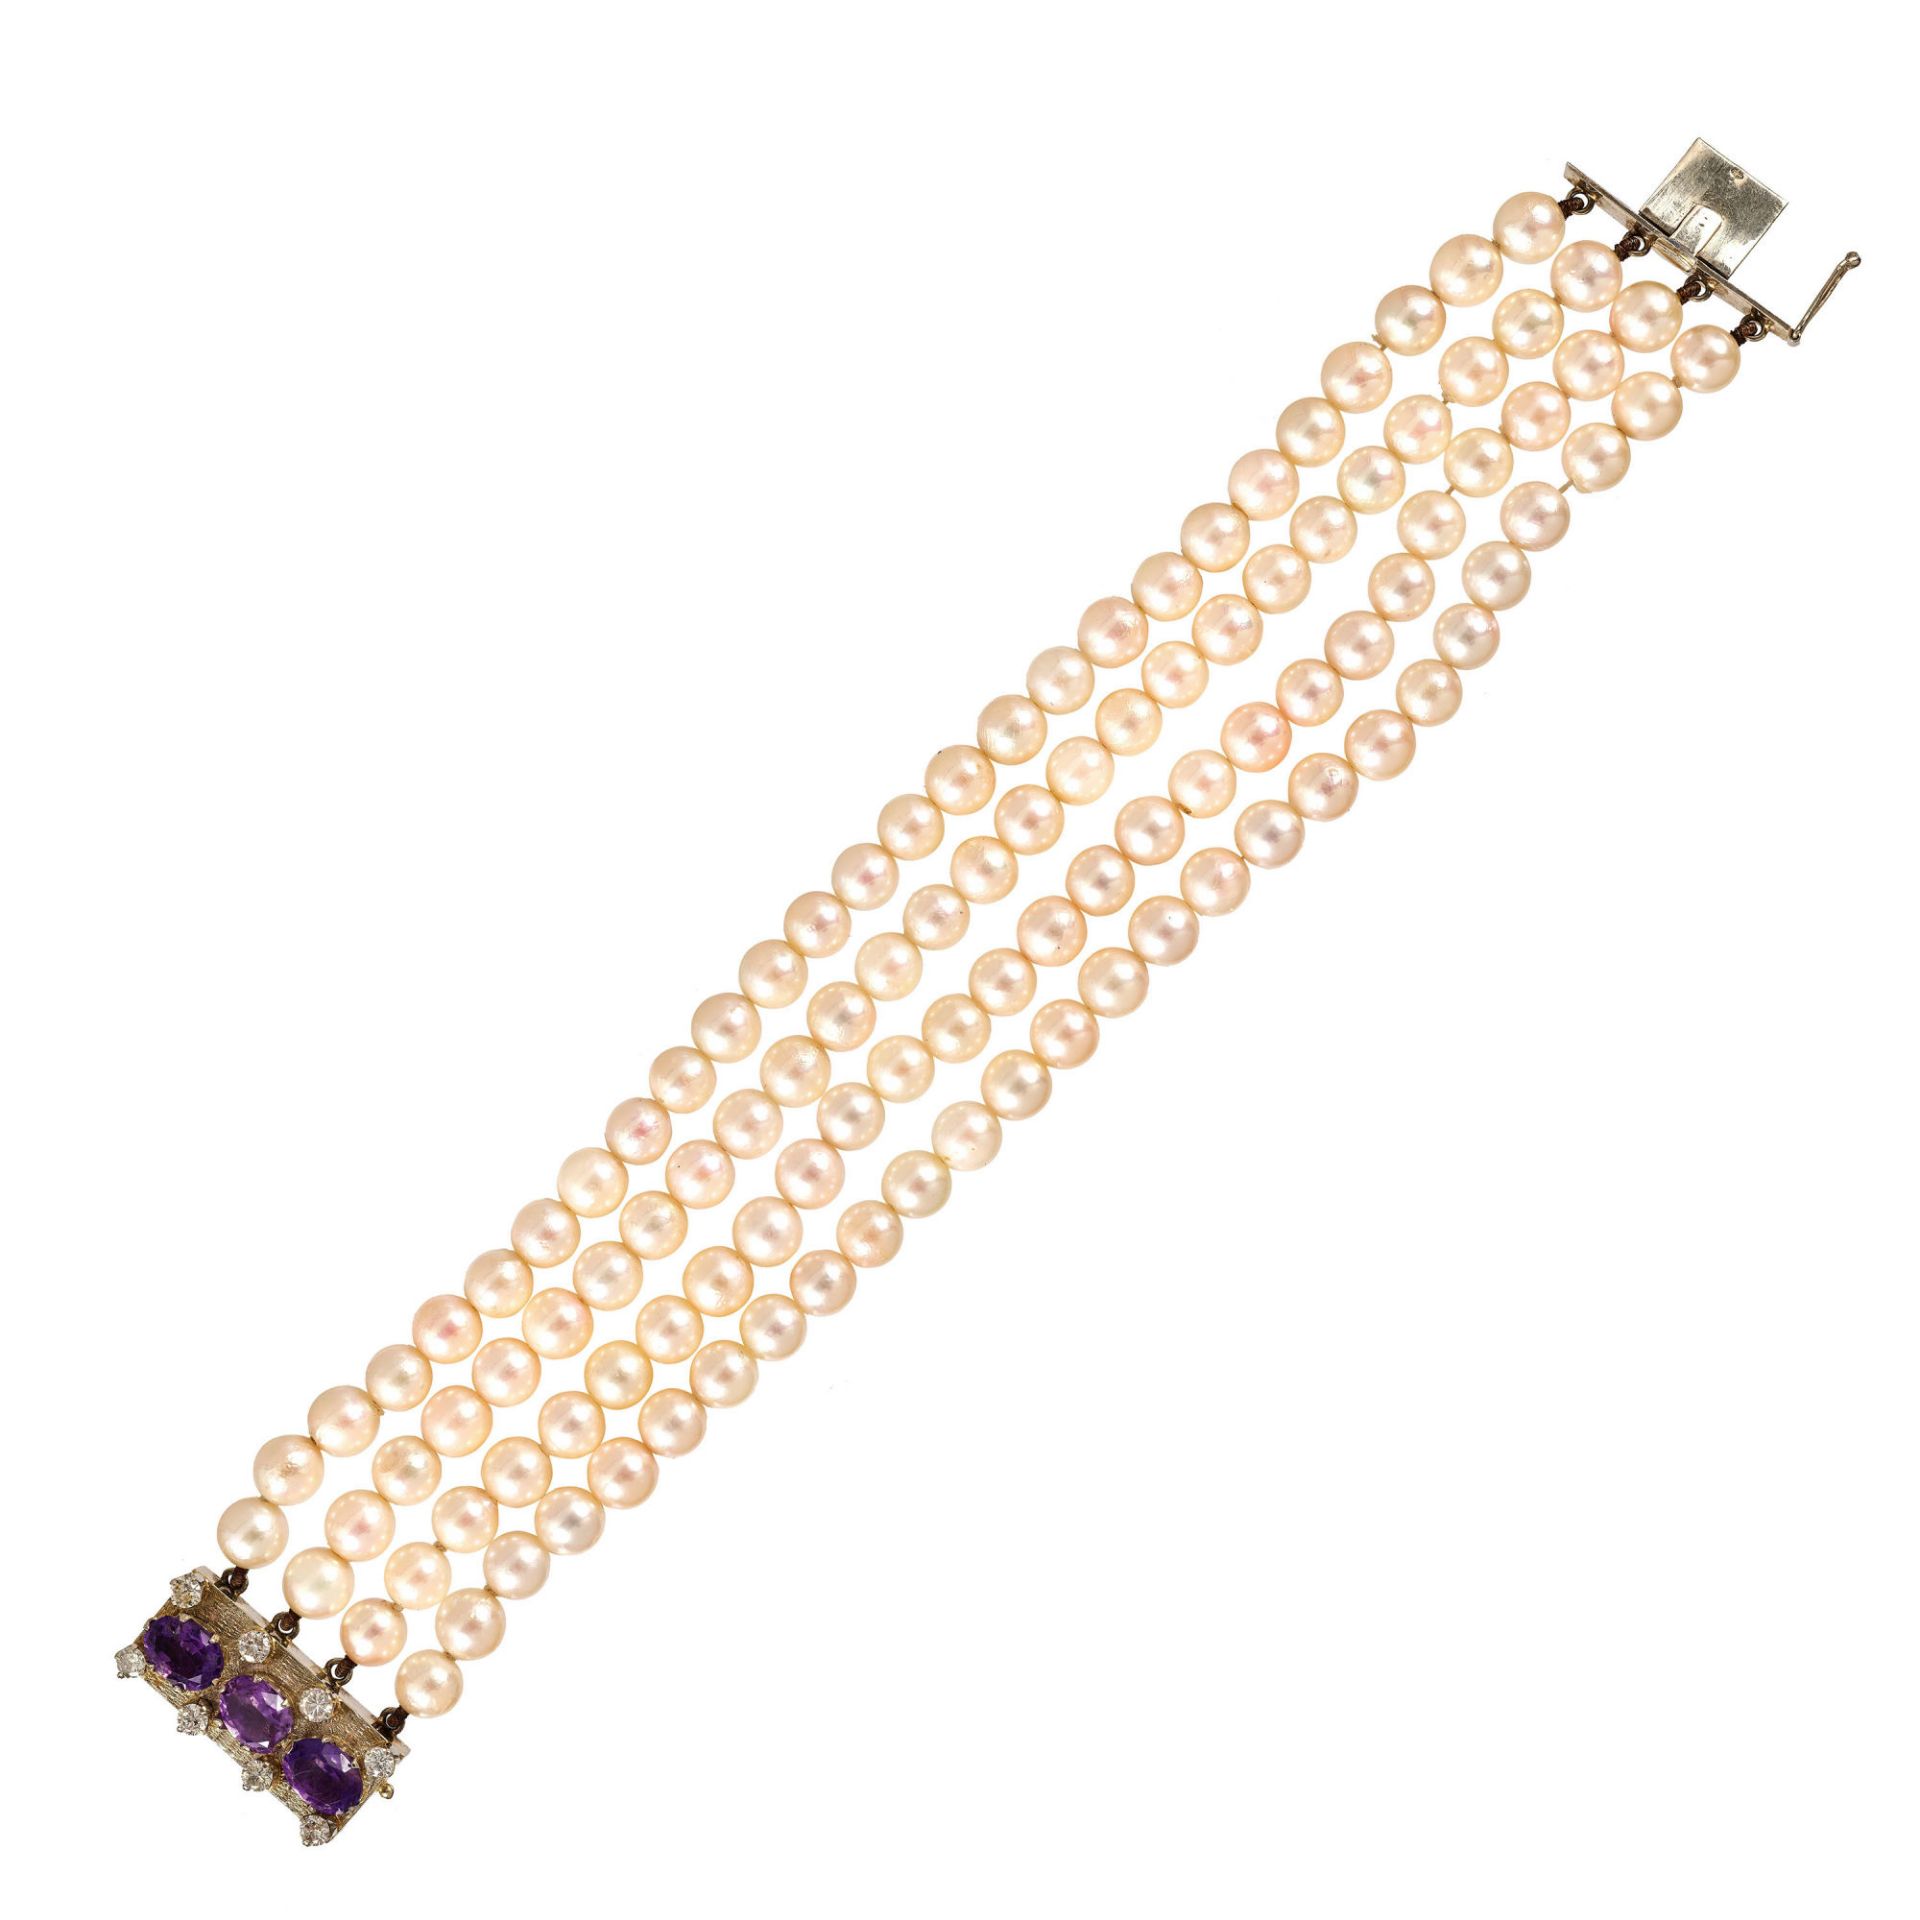 AMETHYST-PERLEN-BRACELET / Amethyst-pearl-bracelet 